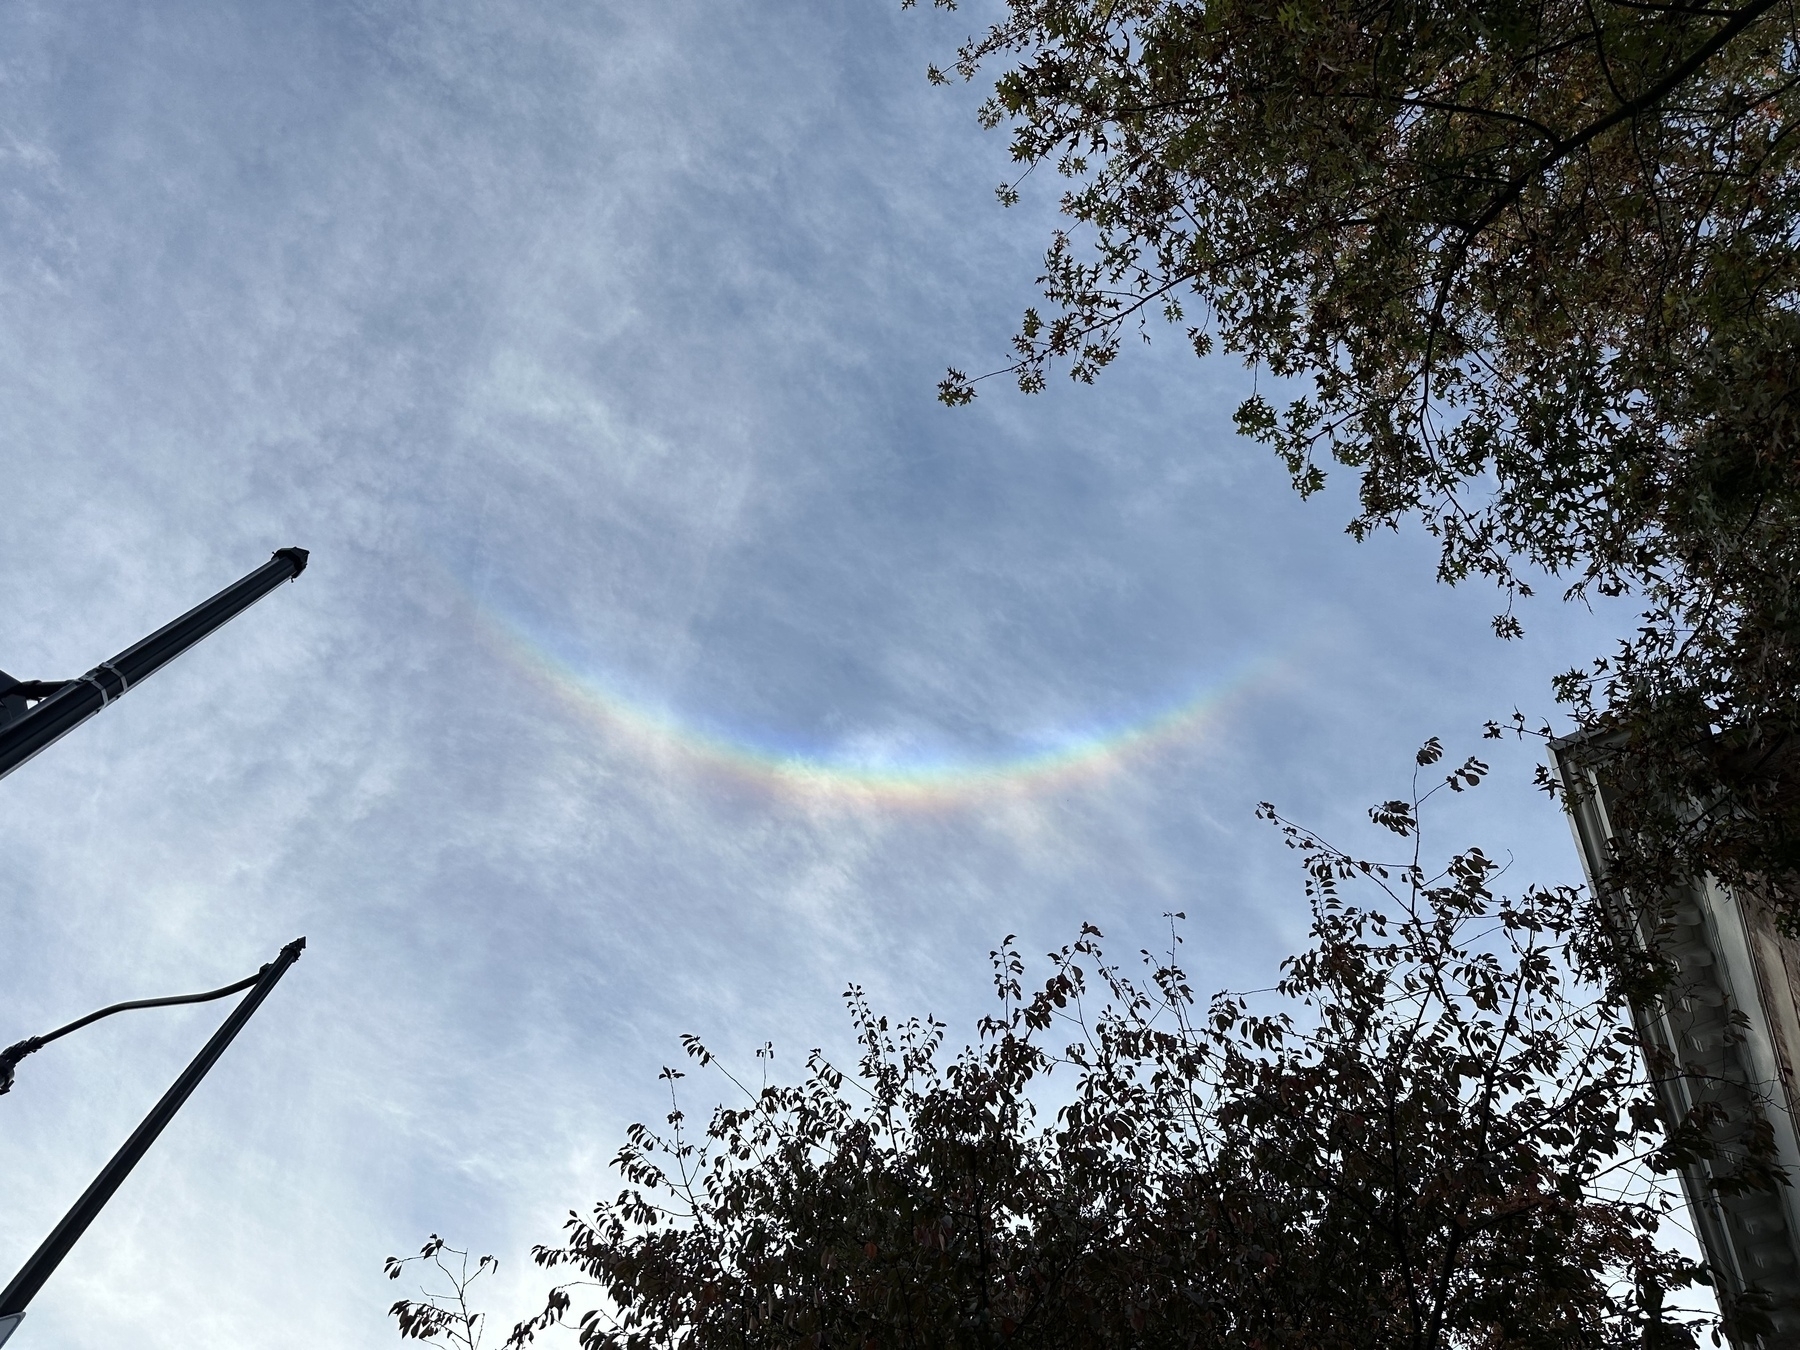 Photo of the sky with a rainbow arc shaped like a smile.